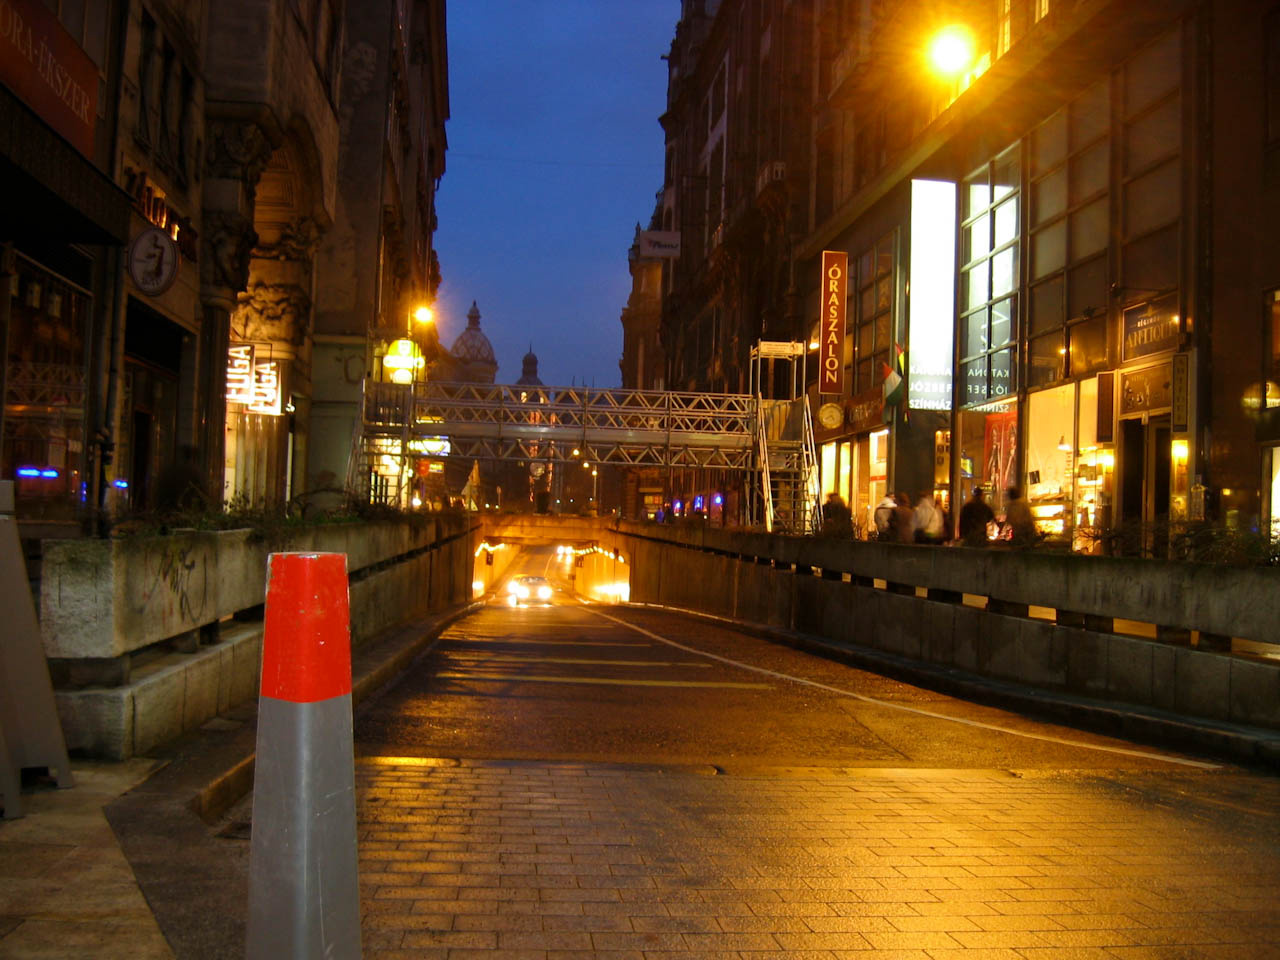 Ugyanaz az aluljáró, a Petőfi Sándor utca felől nézve. Lesznek itt még izgalmas pillanatok